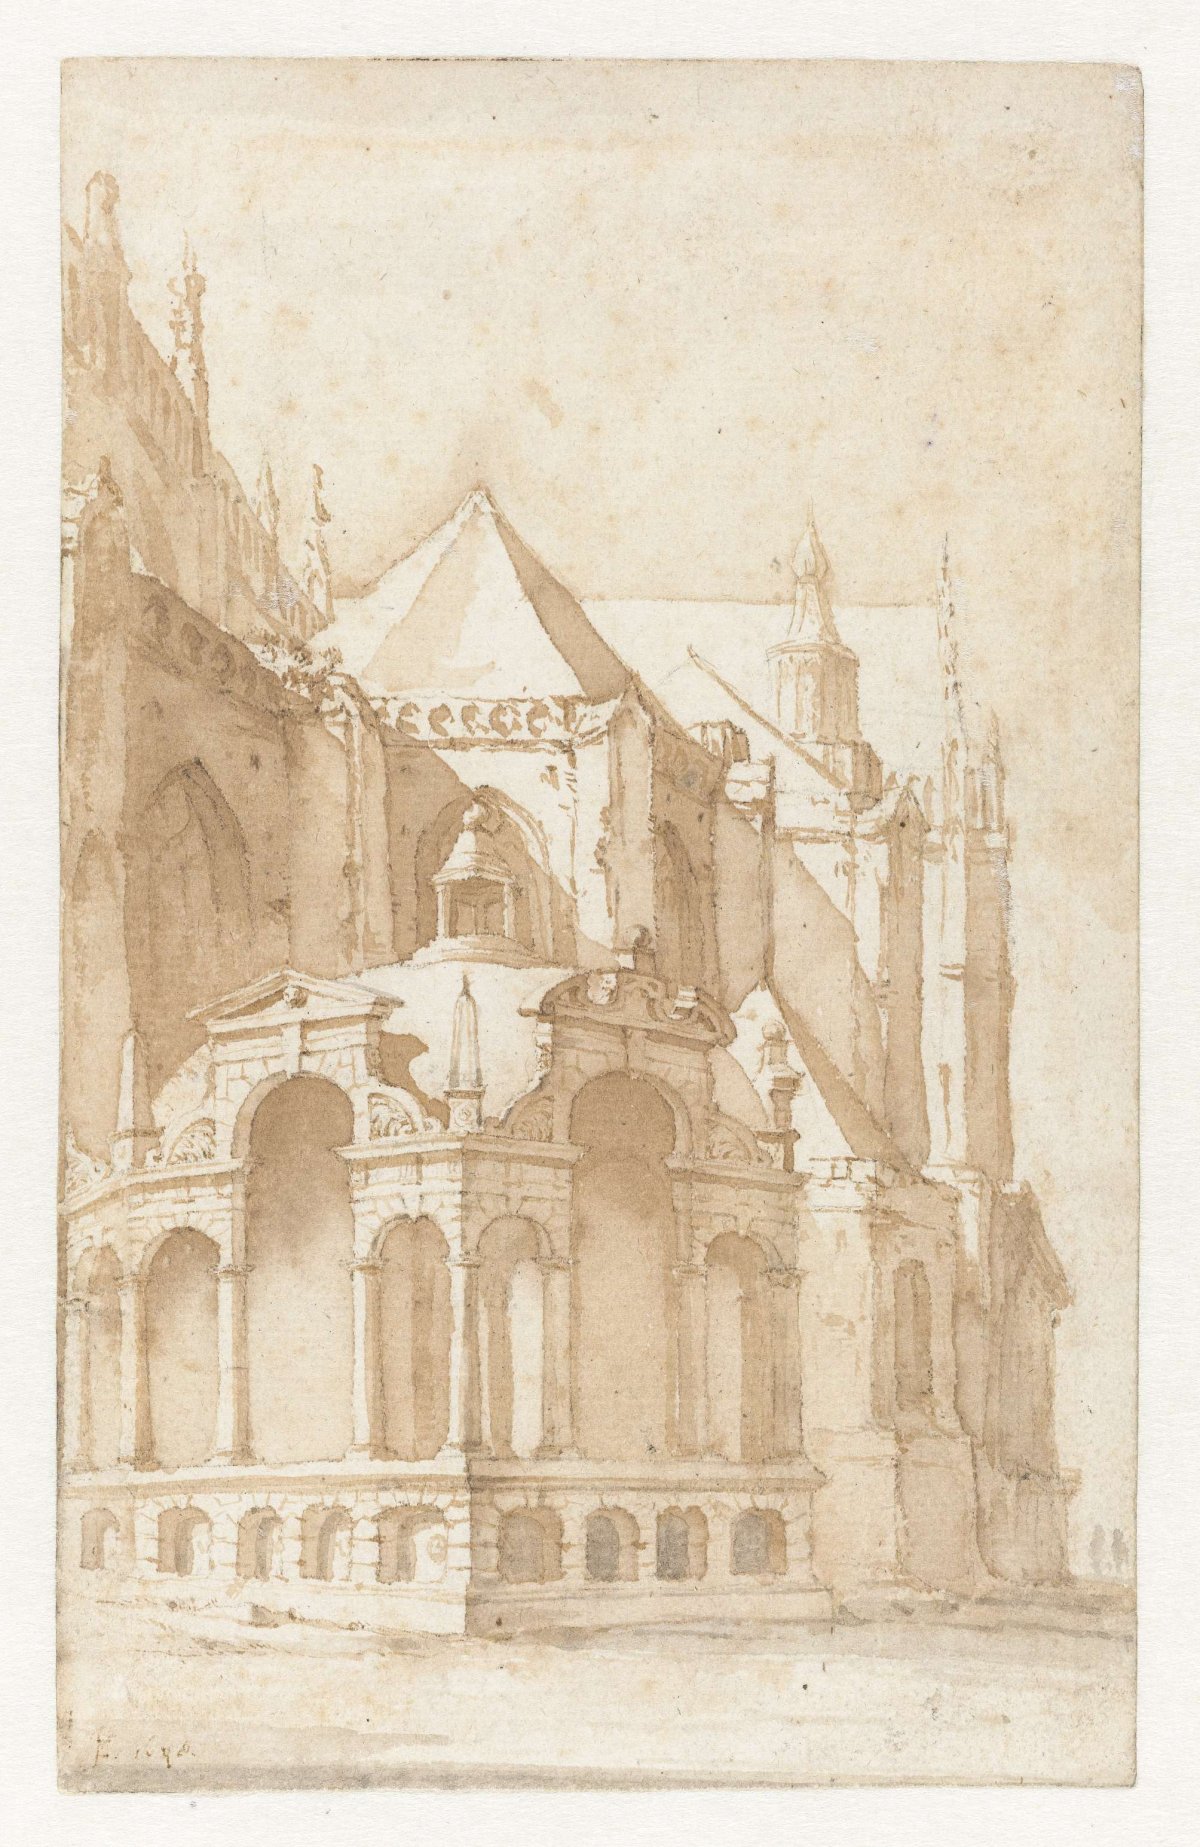 Beckeneel house at the Nieuwe Kerk in Amsterdam, Jan de Bisschop, 1648